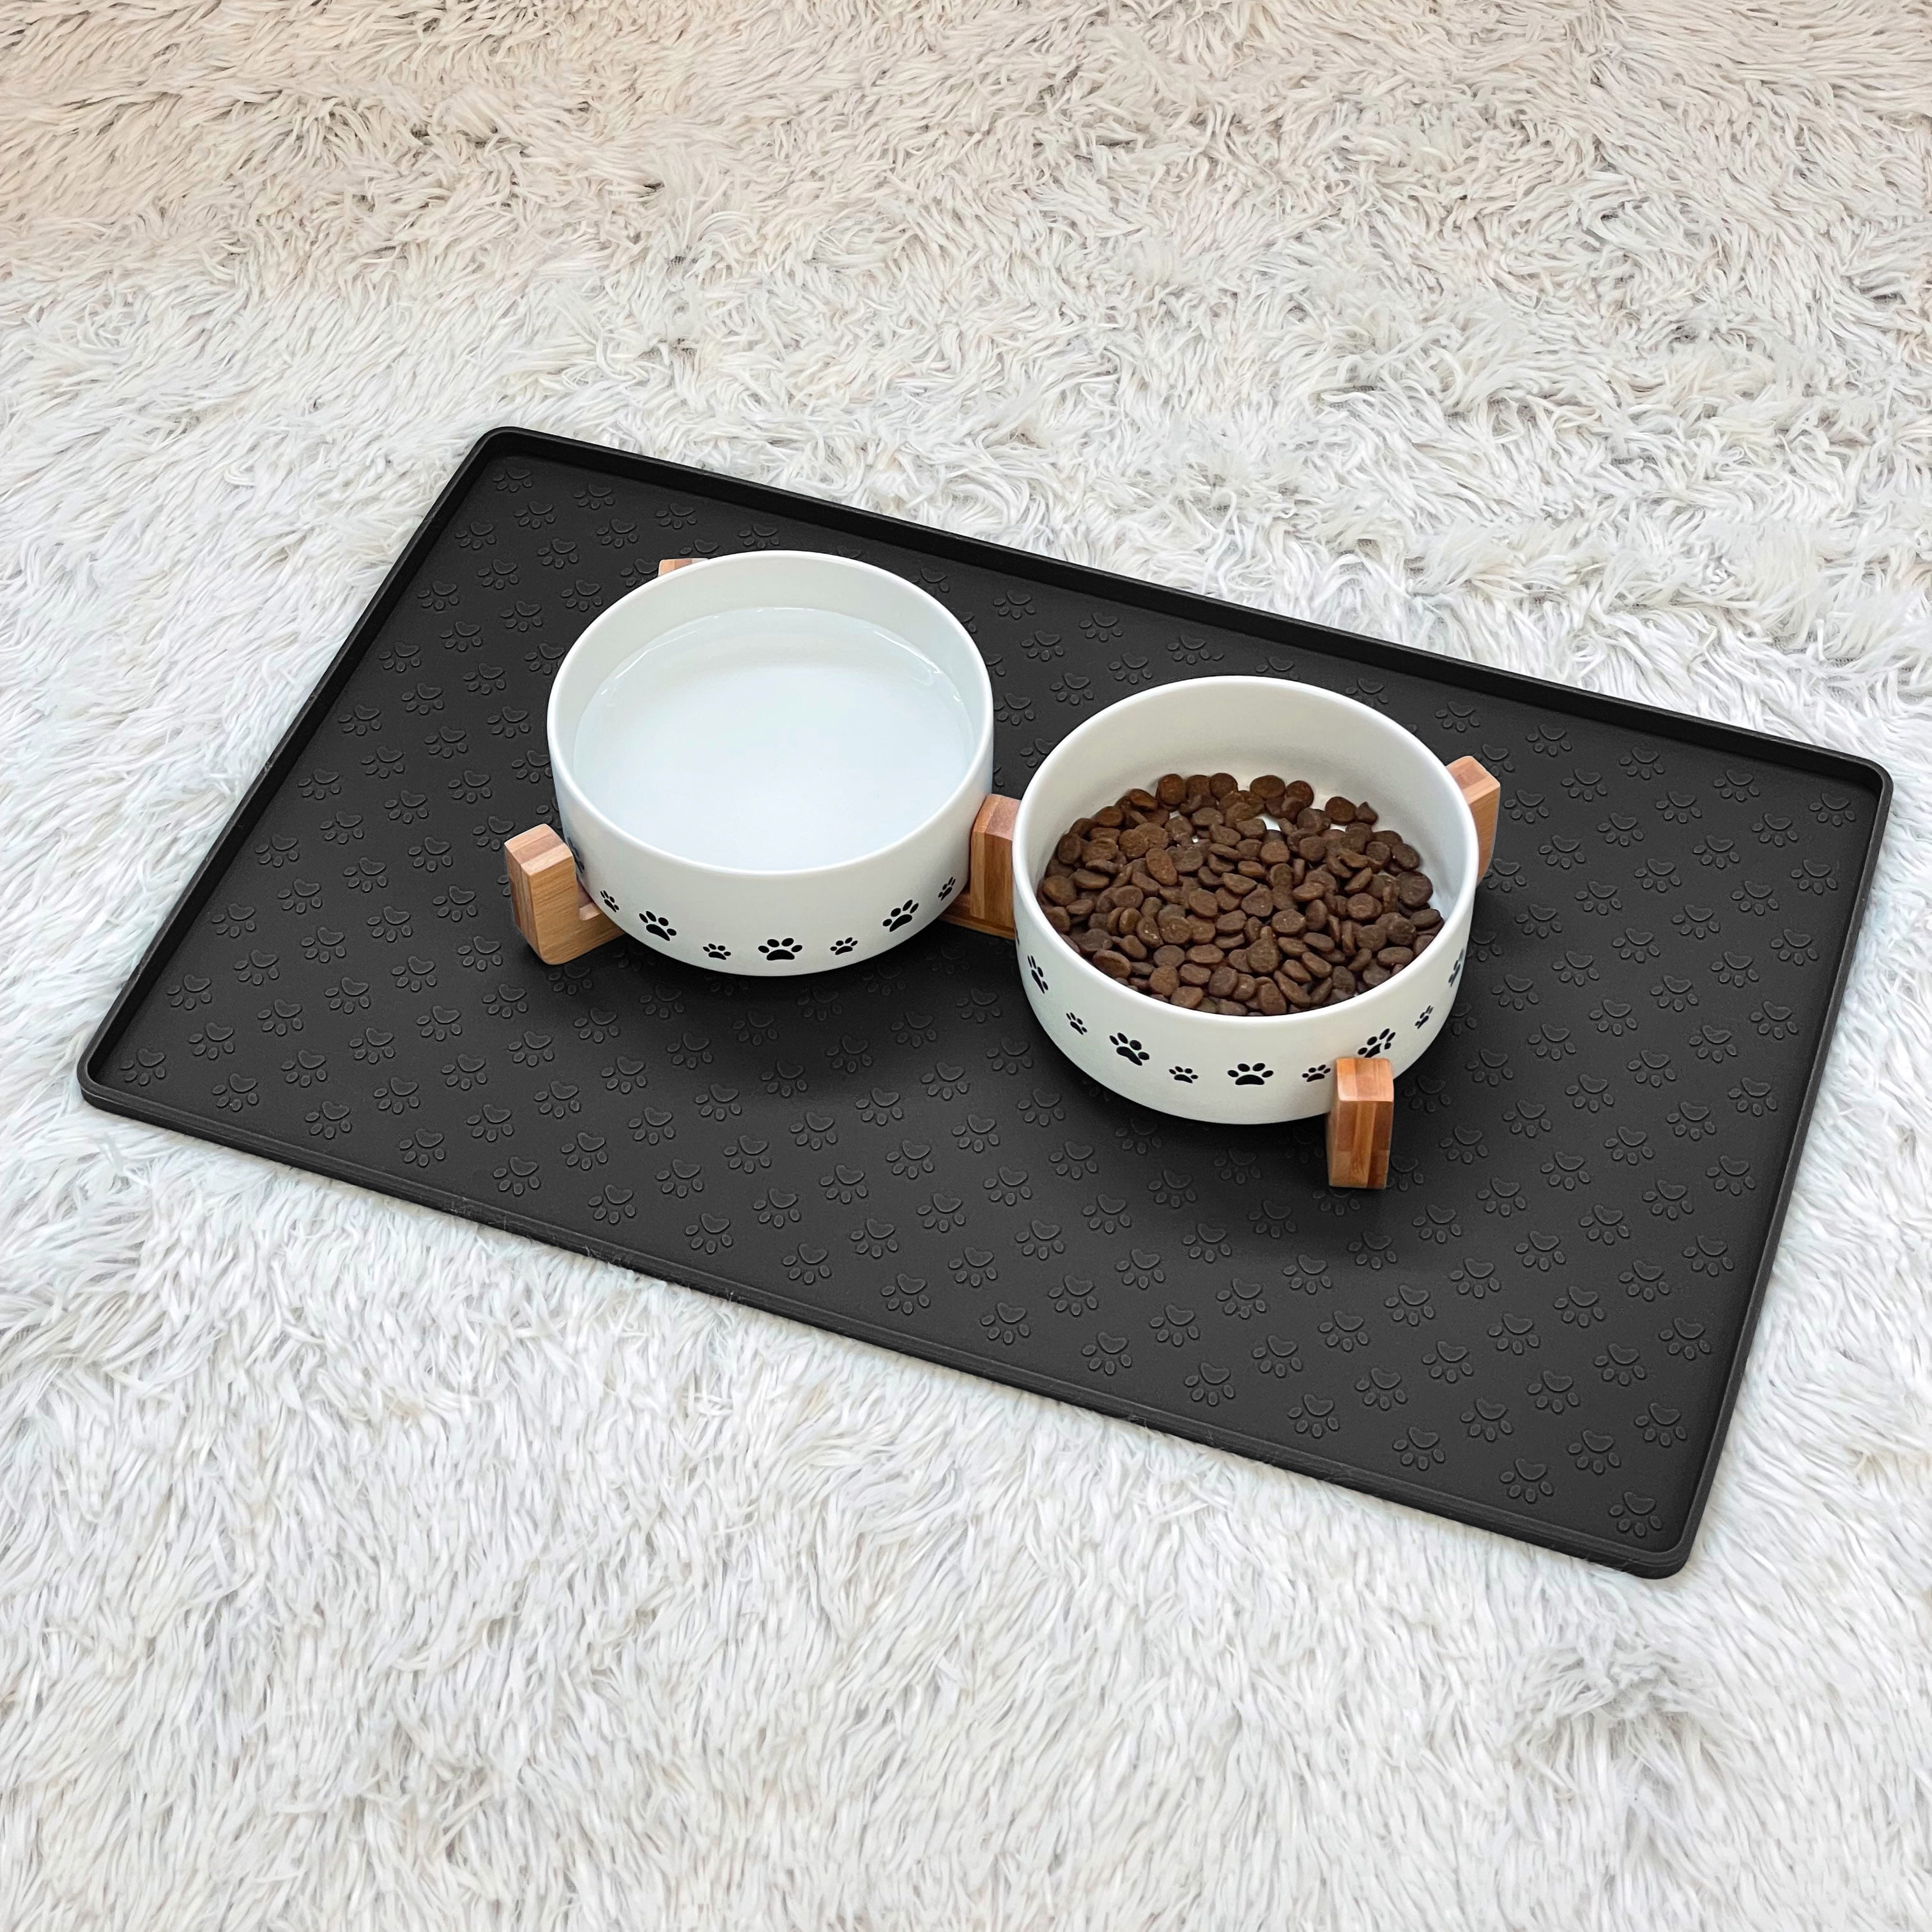 AAZZKANG Cat Feeding Mat Waterproof Cute Pet Mat for Food,Bowl,Water Black